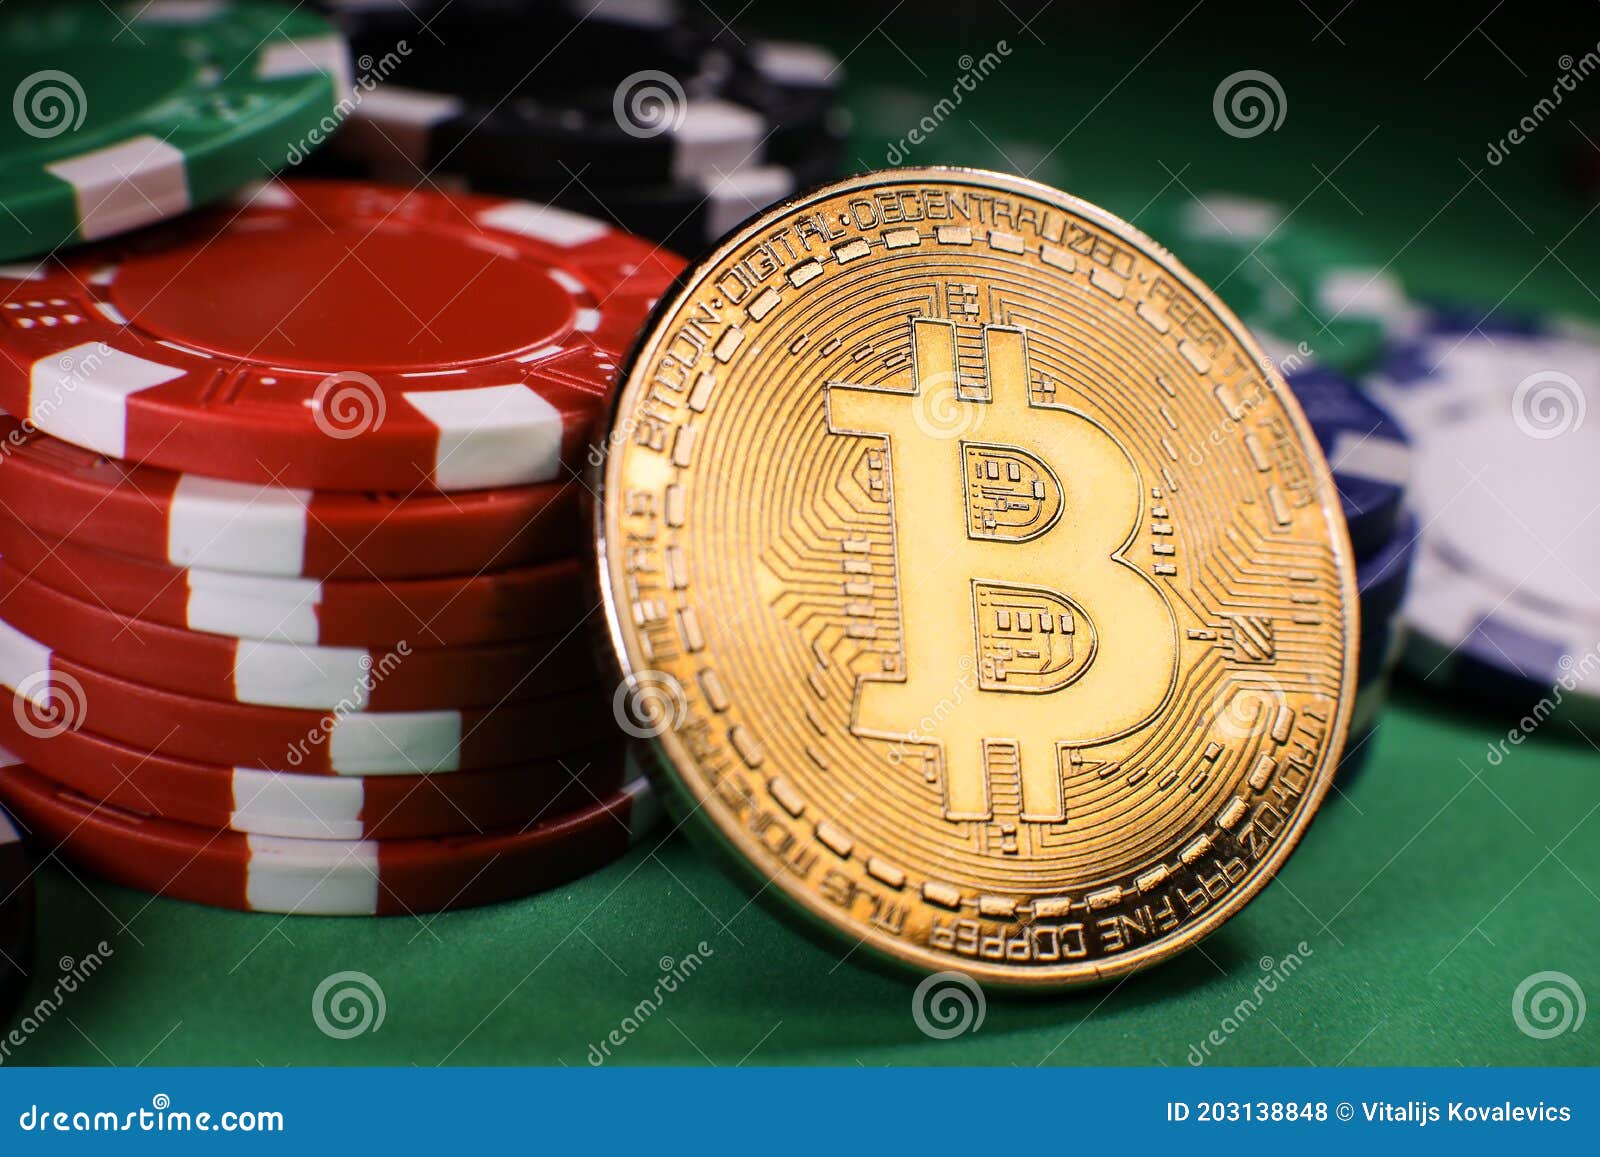 Who Else Wants To Enjoy casino bitcoin